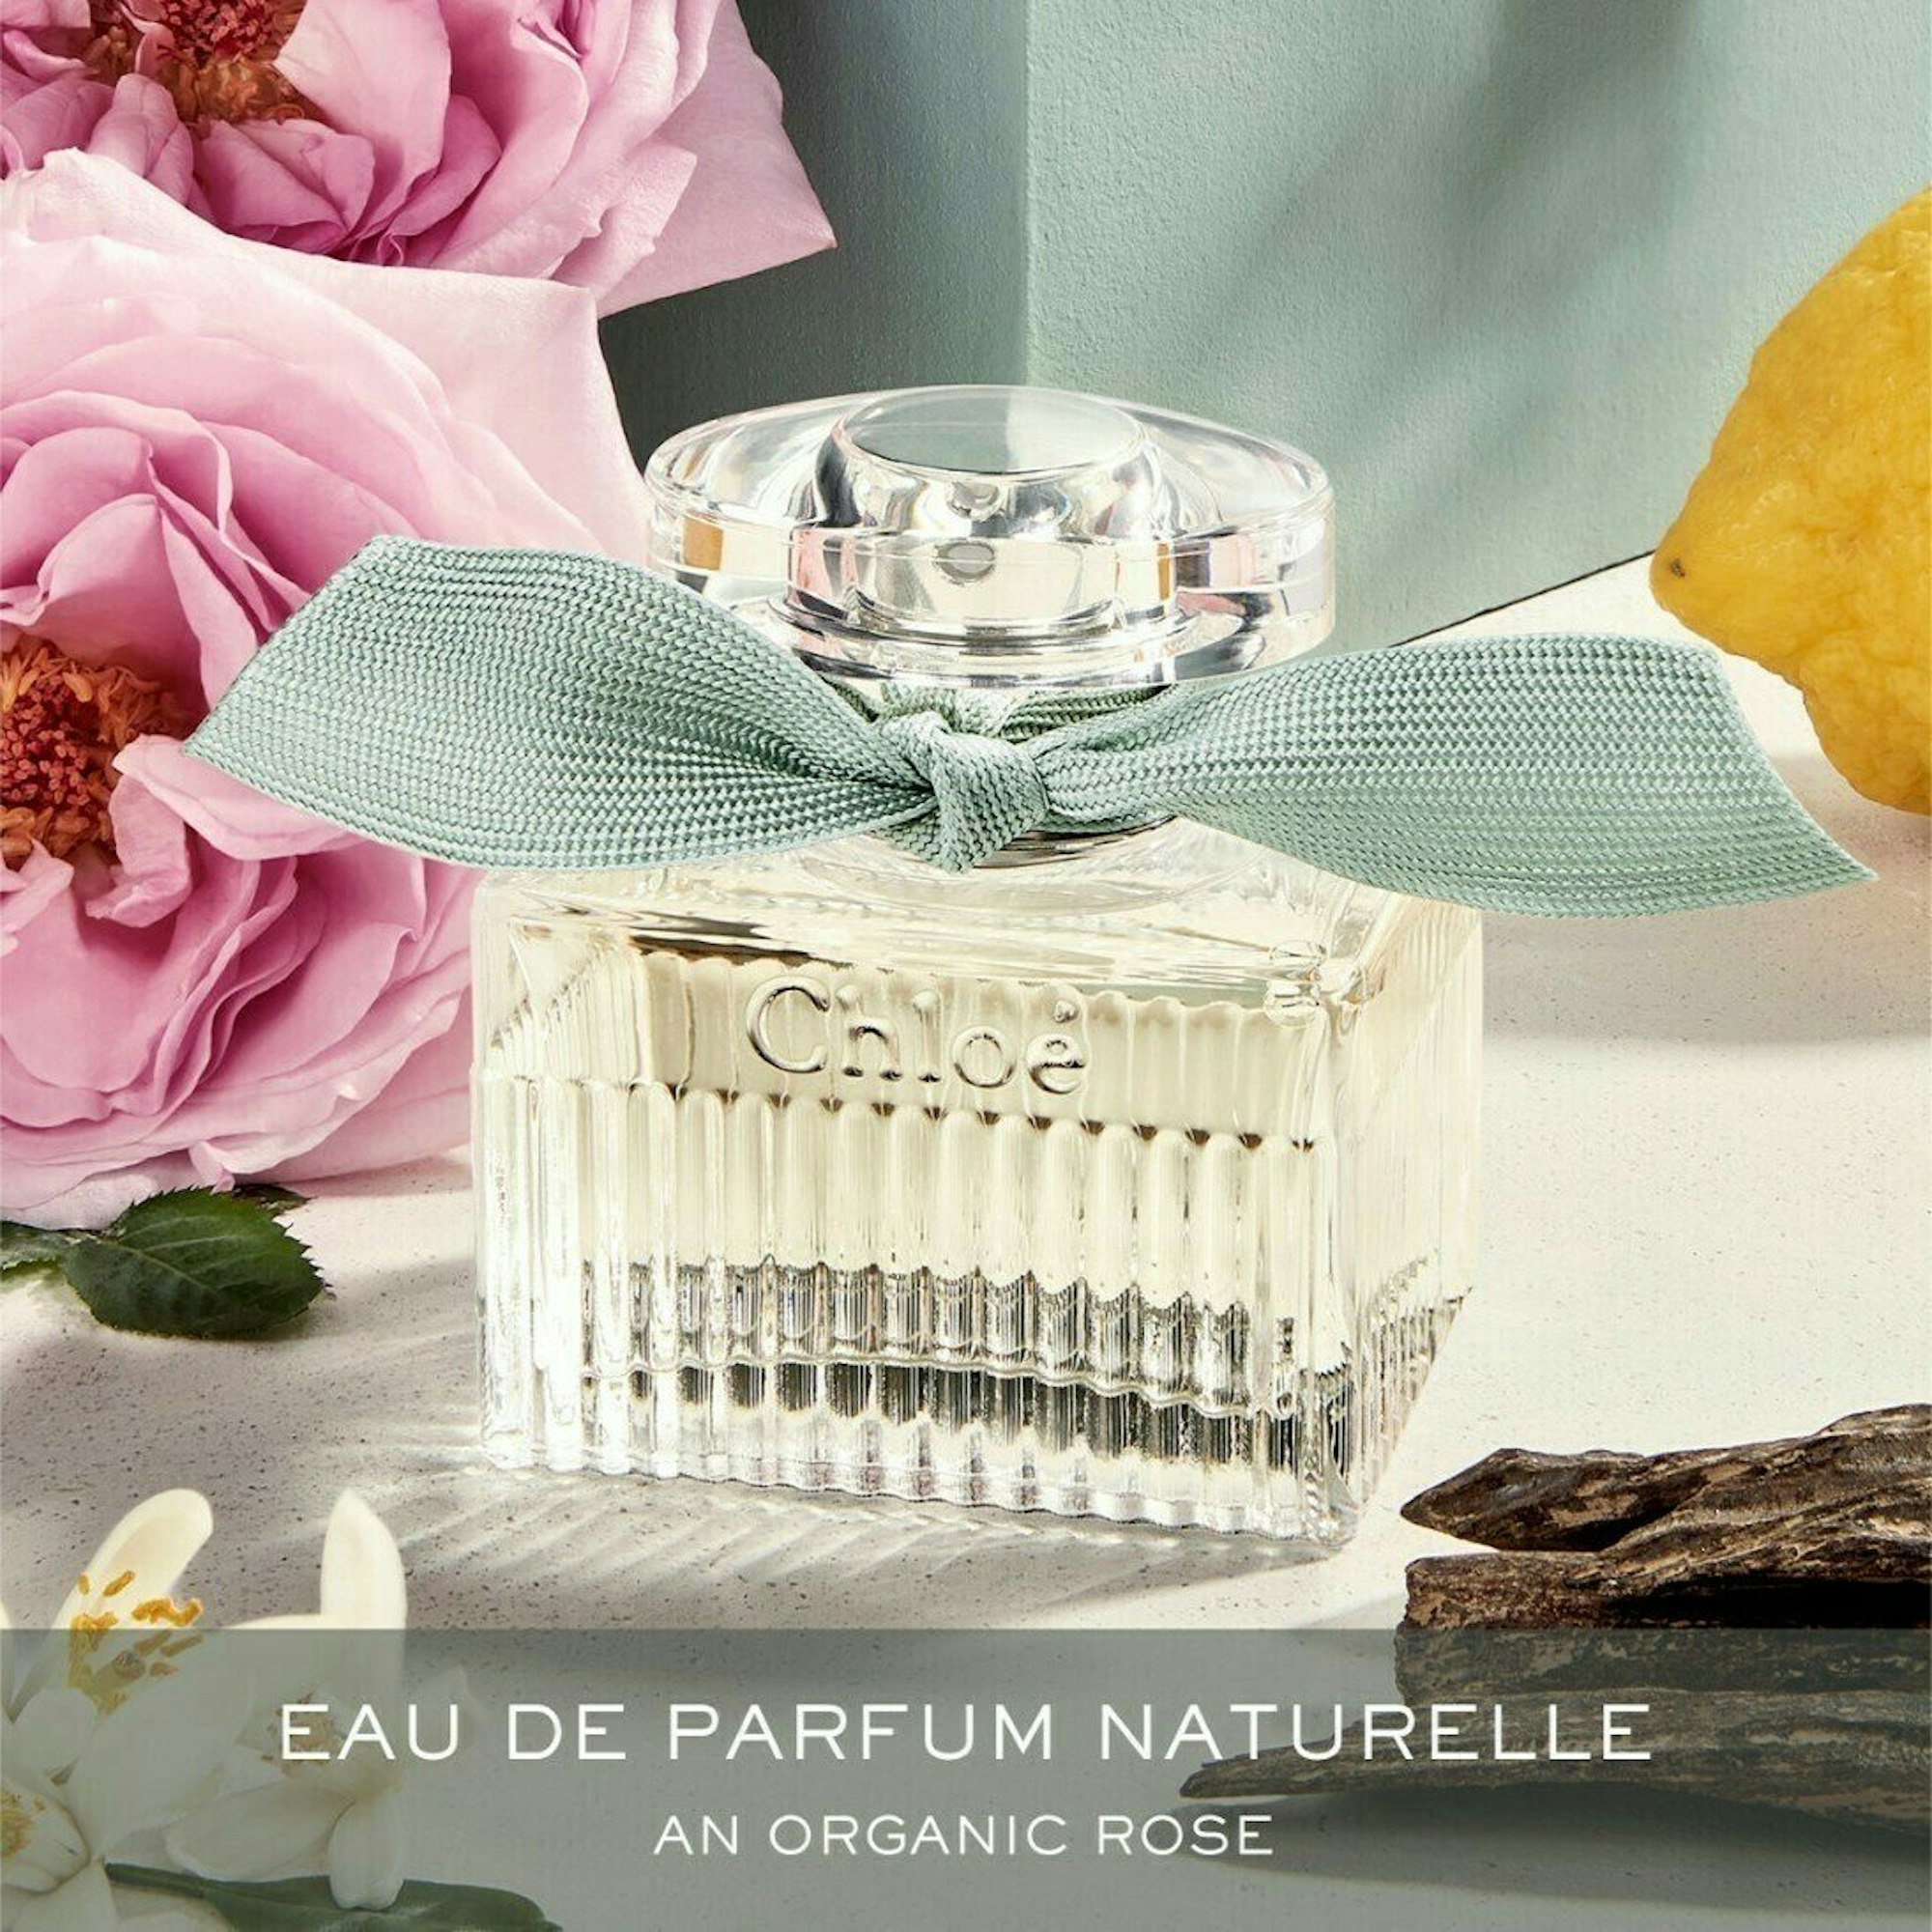 Cloé by Chloé Naturelle Eau de Parfum im Flacon.